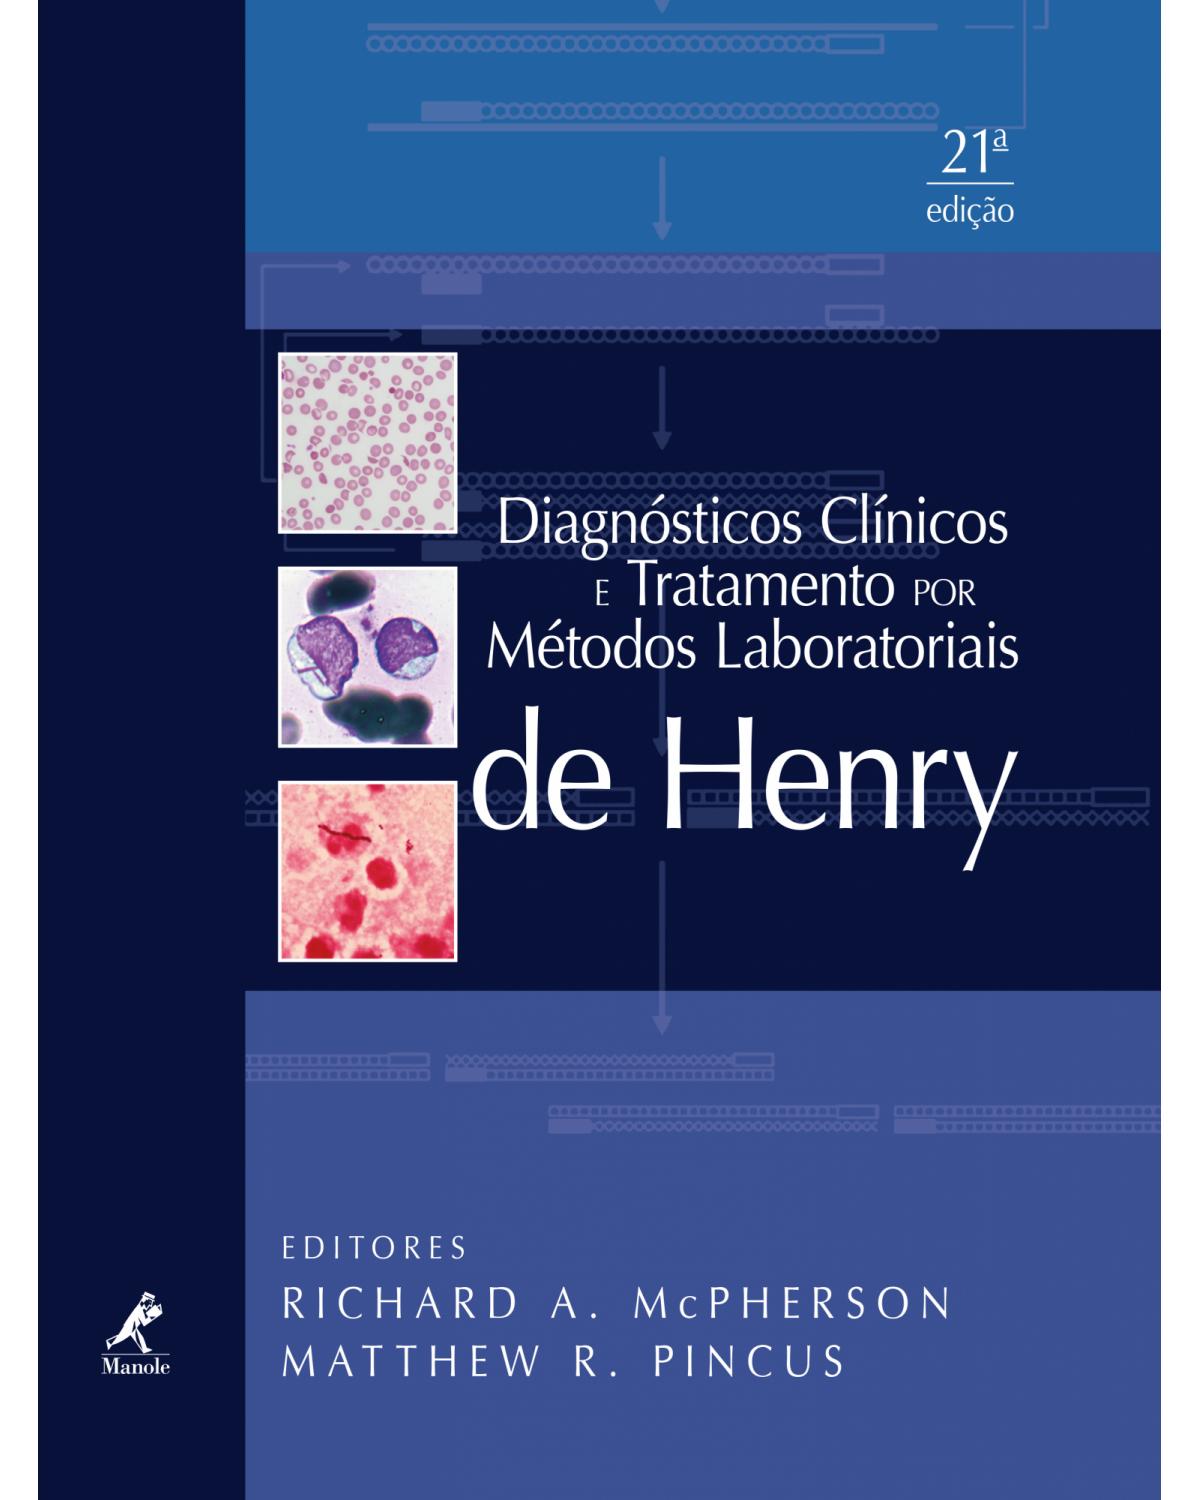 Diagnósticos clínicos e tratamento por métodos laboratoriais de Henry - 21ª Edição | 2013